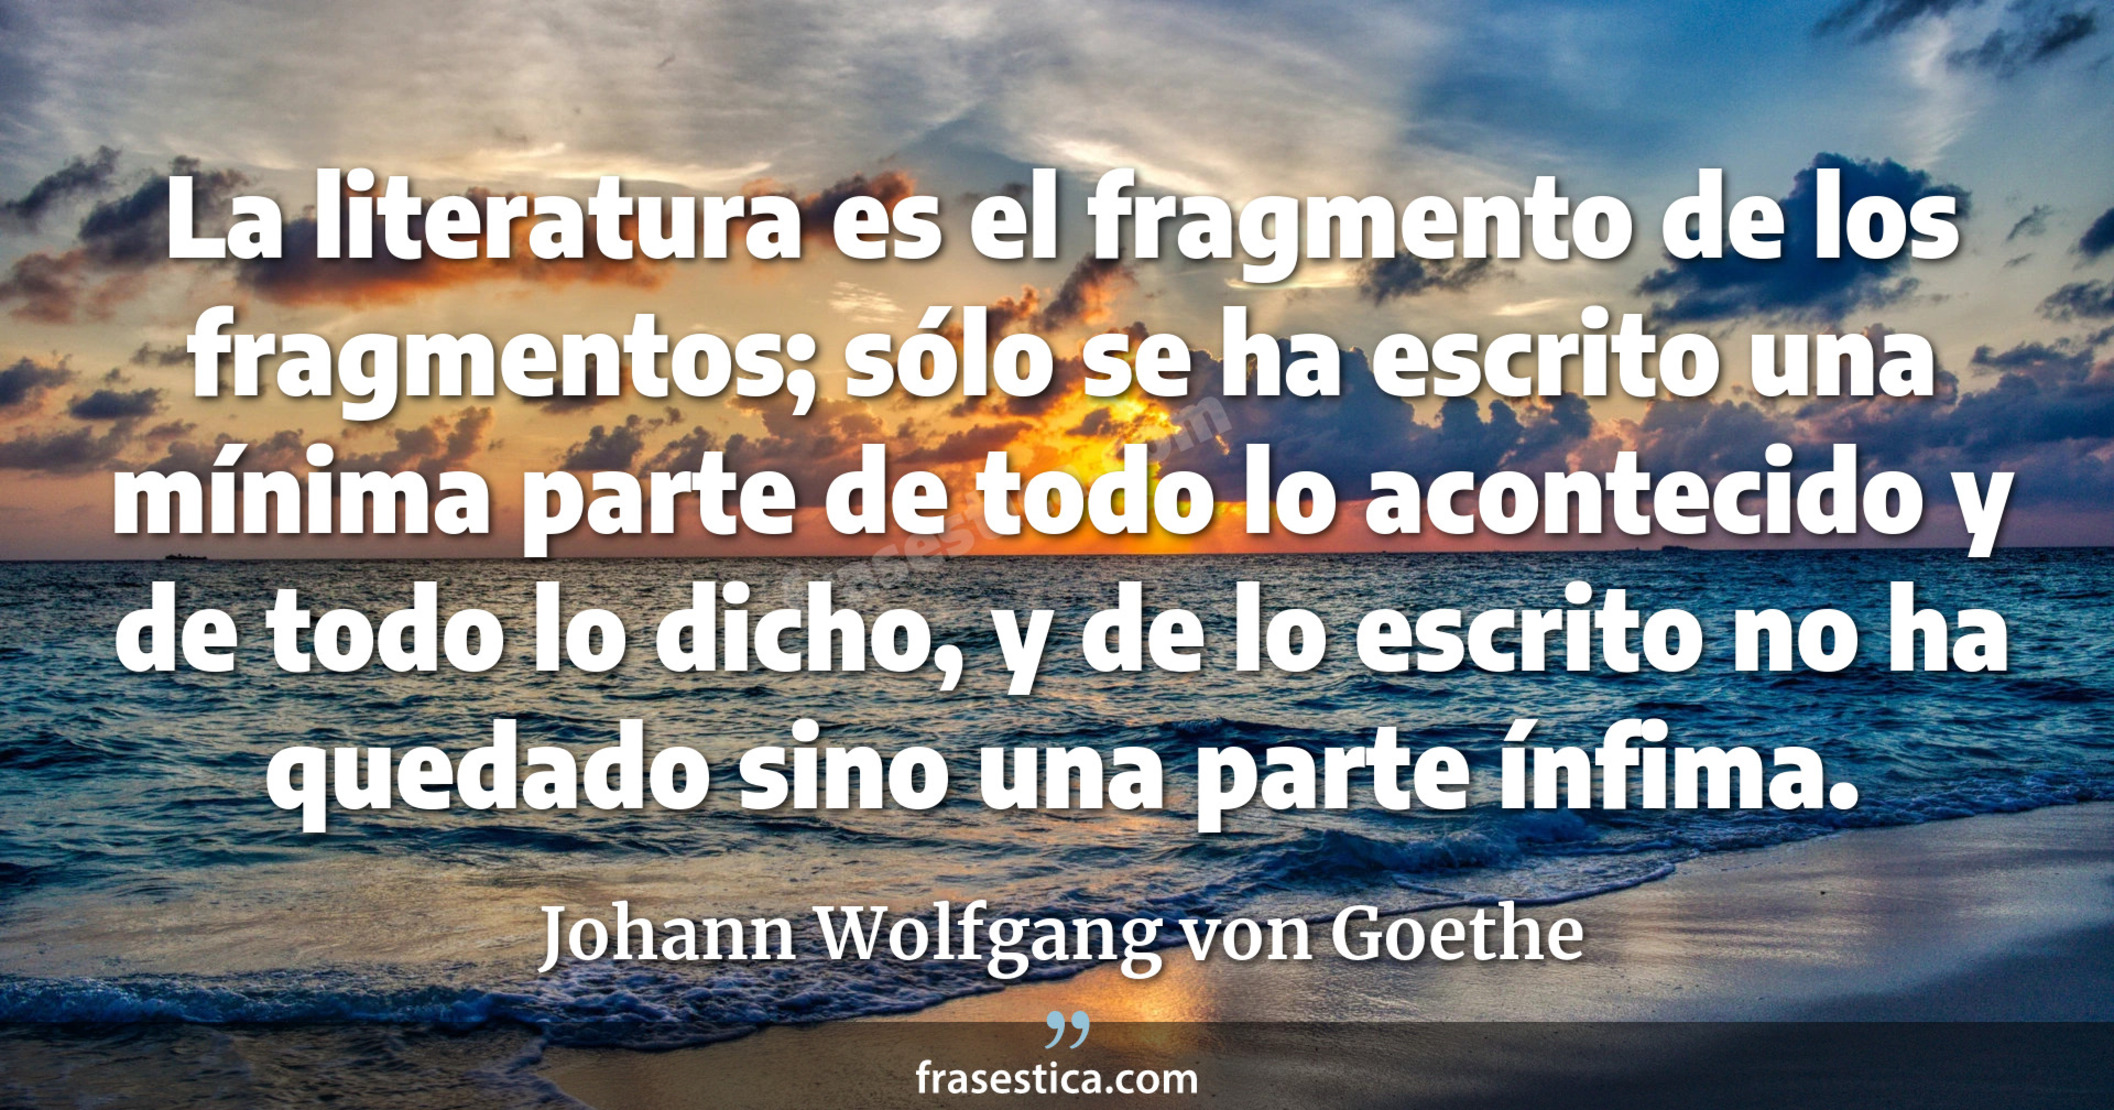 La literatura es el fragmento de los fragmentos; sólo se ha escrito una mínima parte de todo lo acontecido y de todo lo dicho, y de lo escrito no ha quedado sino una parte ínfima. - Johann Wolfgang von Goethe